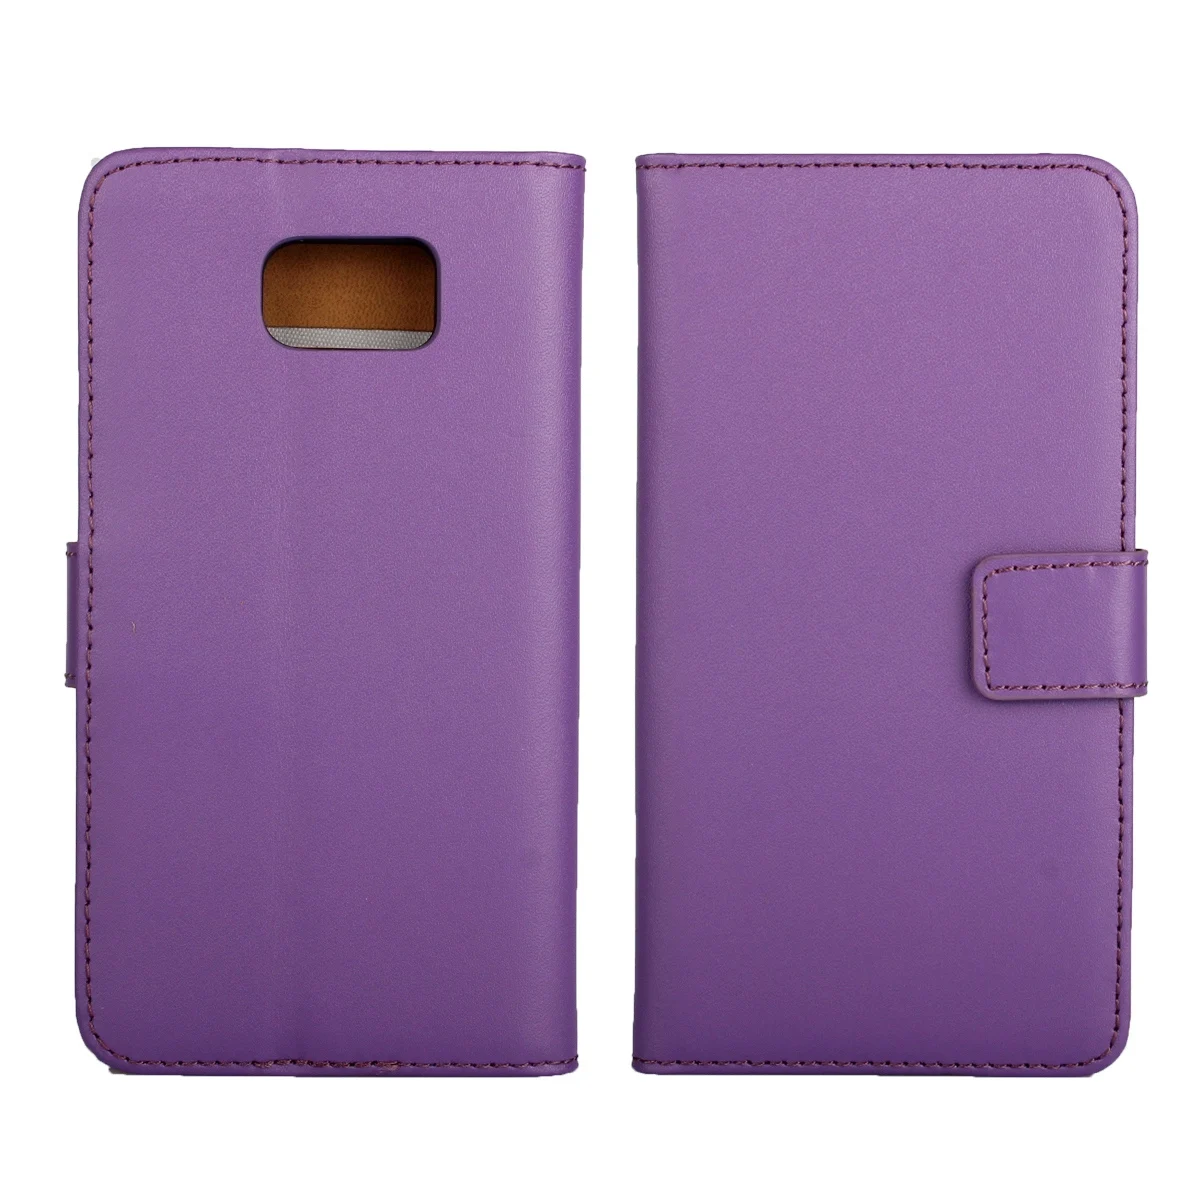 Чехол-книжка для samsung Note5 из искусственной кожи премиум класса, чехол-книжка для samsung Galaxy Note 5 N9200 N920F, чехол с отделением для наличных денег GG - Цвет: Фиолетовый